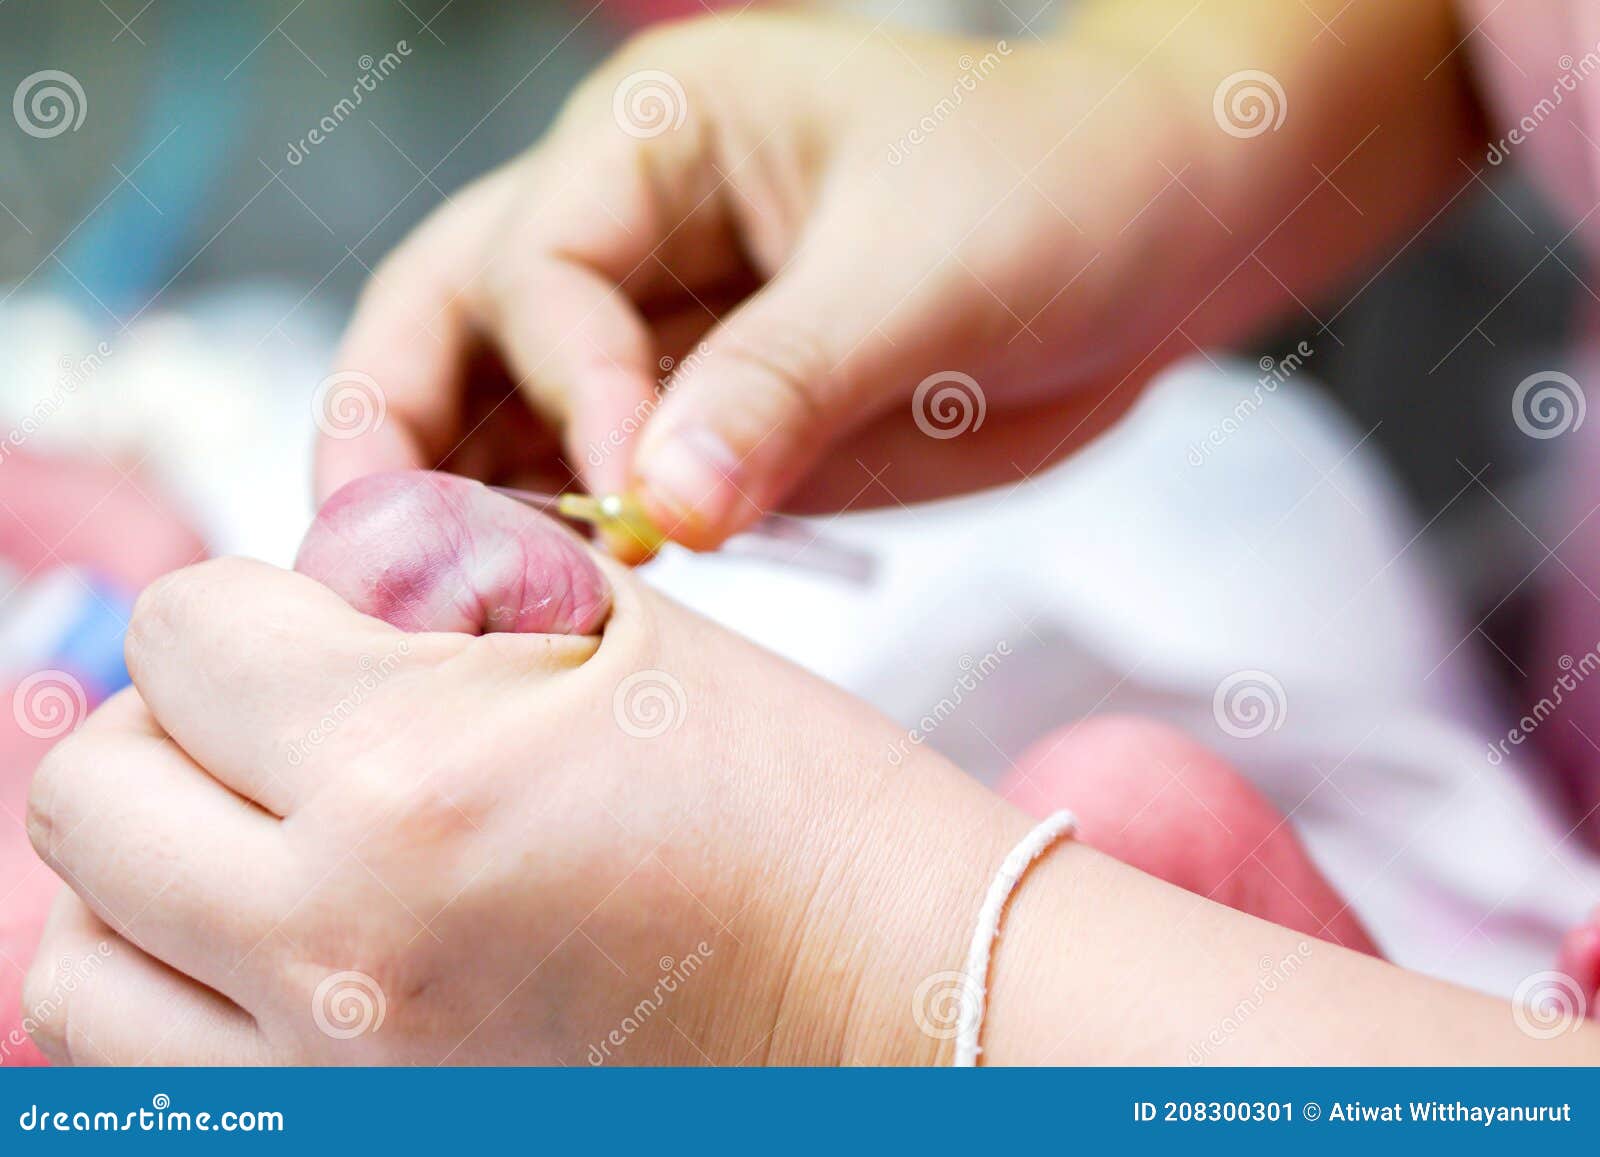 Пальцы колет иголками. Медсестра использует катетер. Медицинской иглой гнойник. Дети с медицинскими спицами в руках. Первая помощь игла палец.